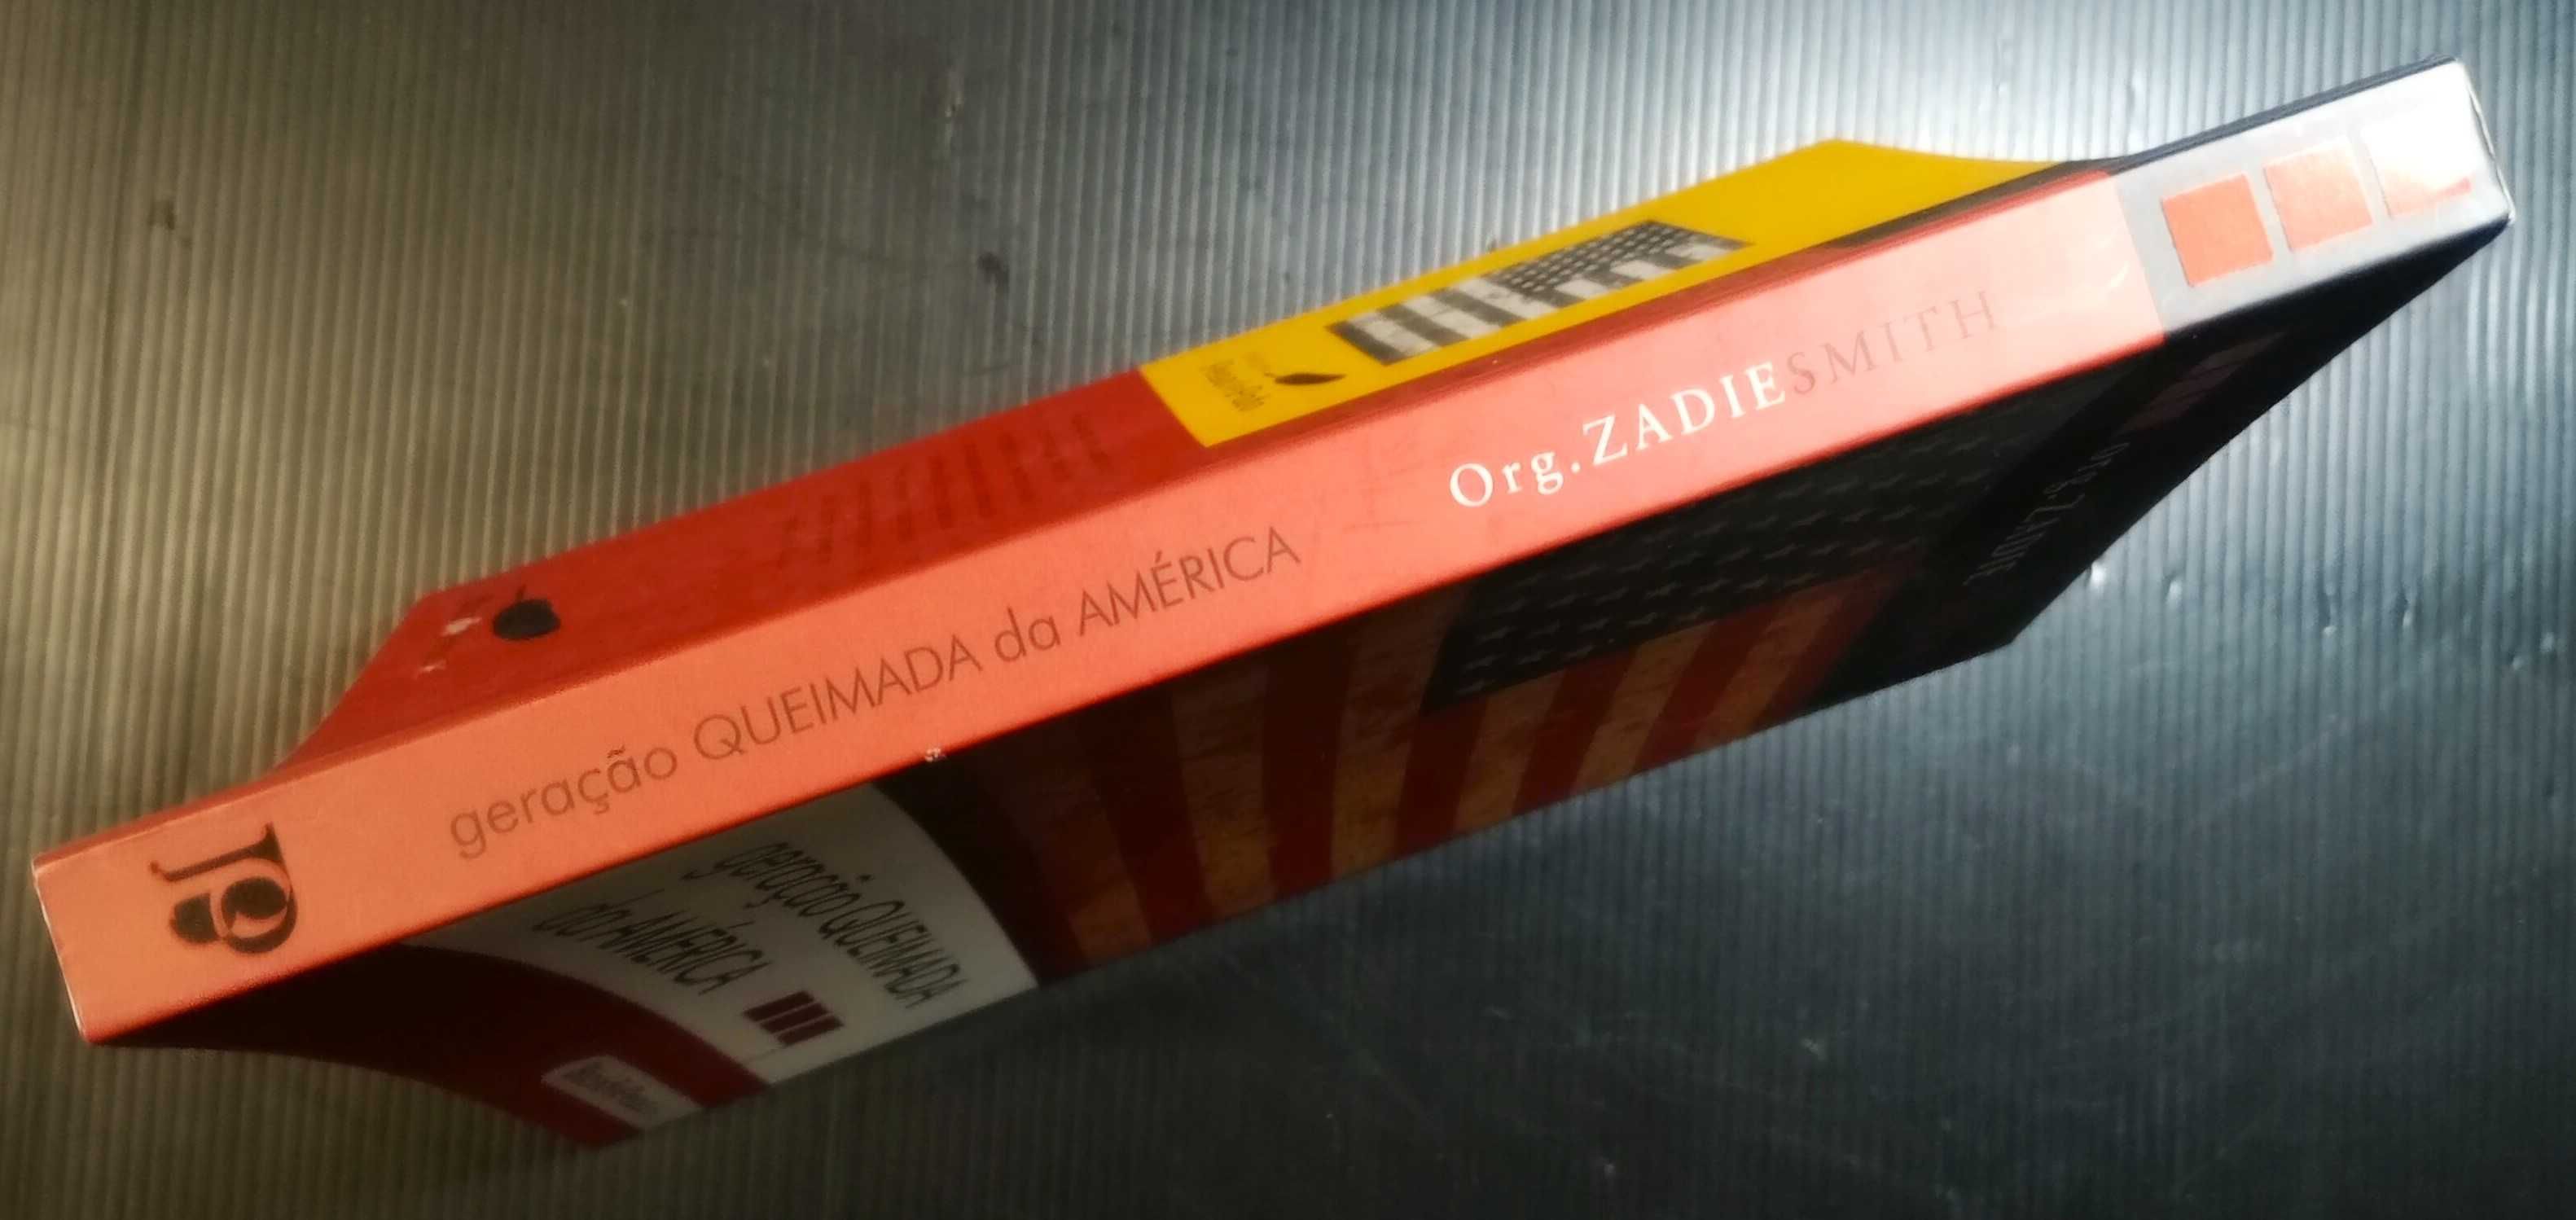 Livro Geração queimada da América * Org. Zadie Smith